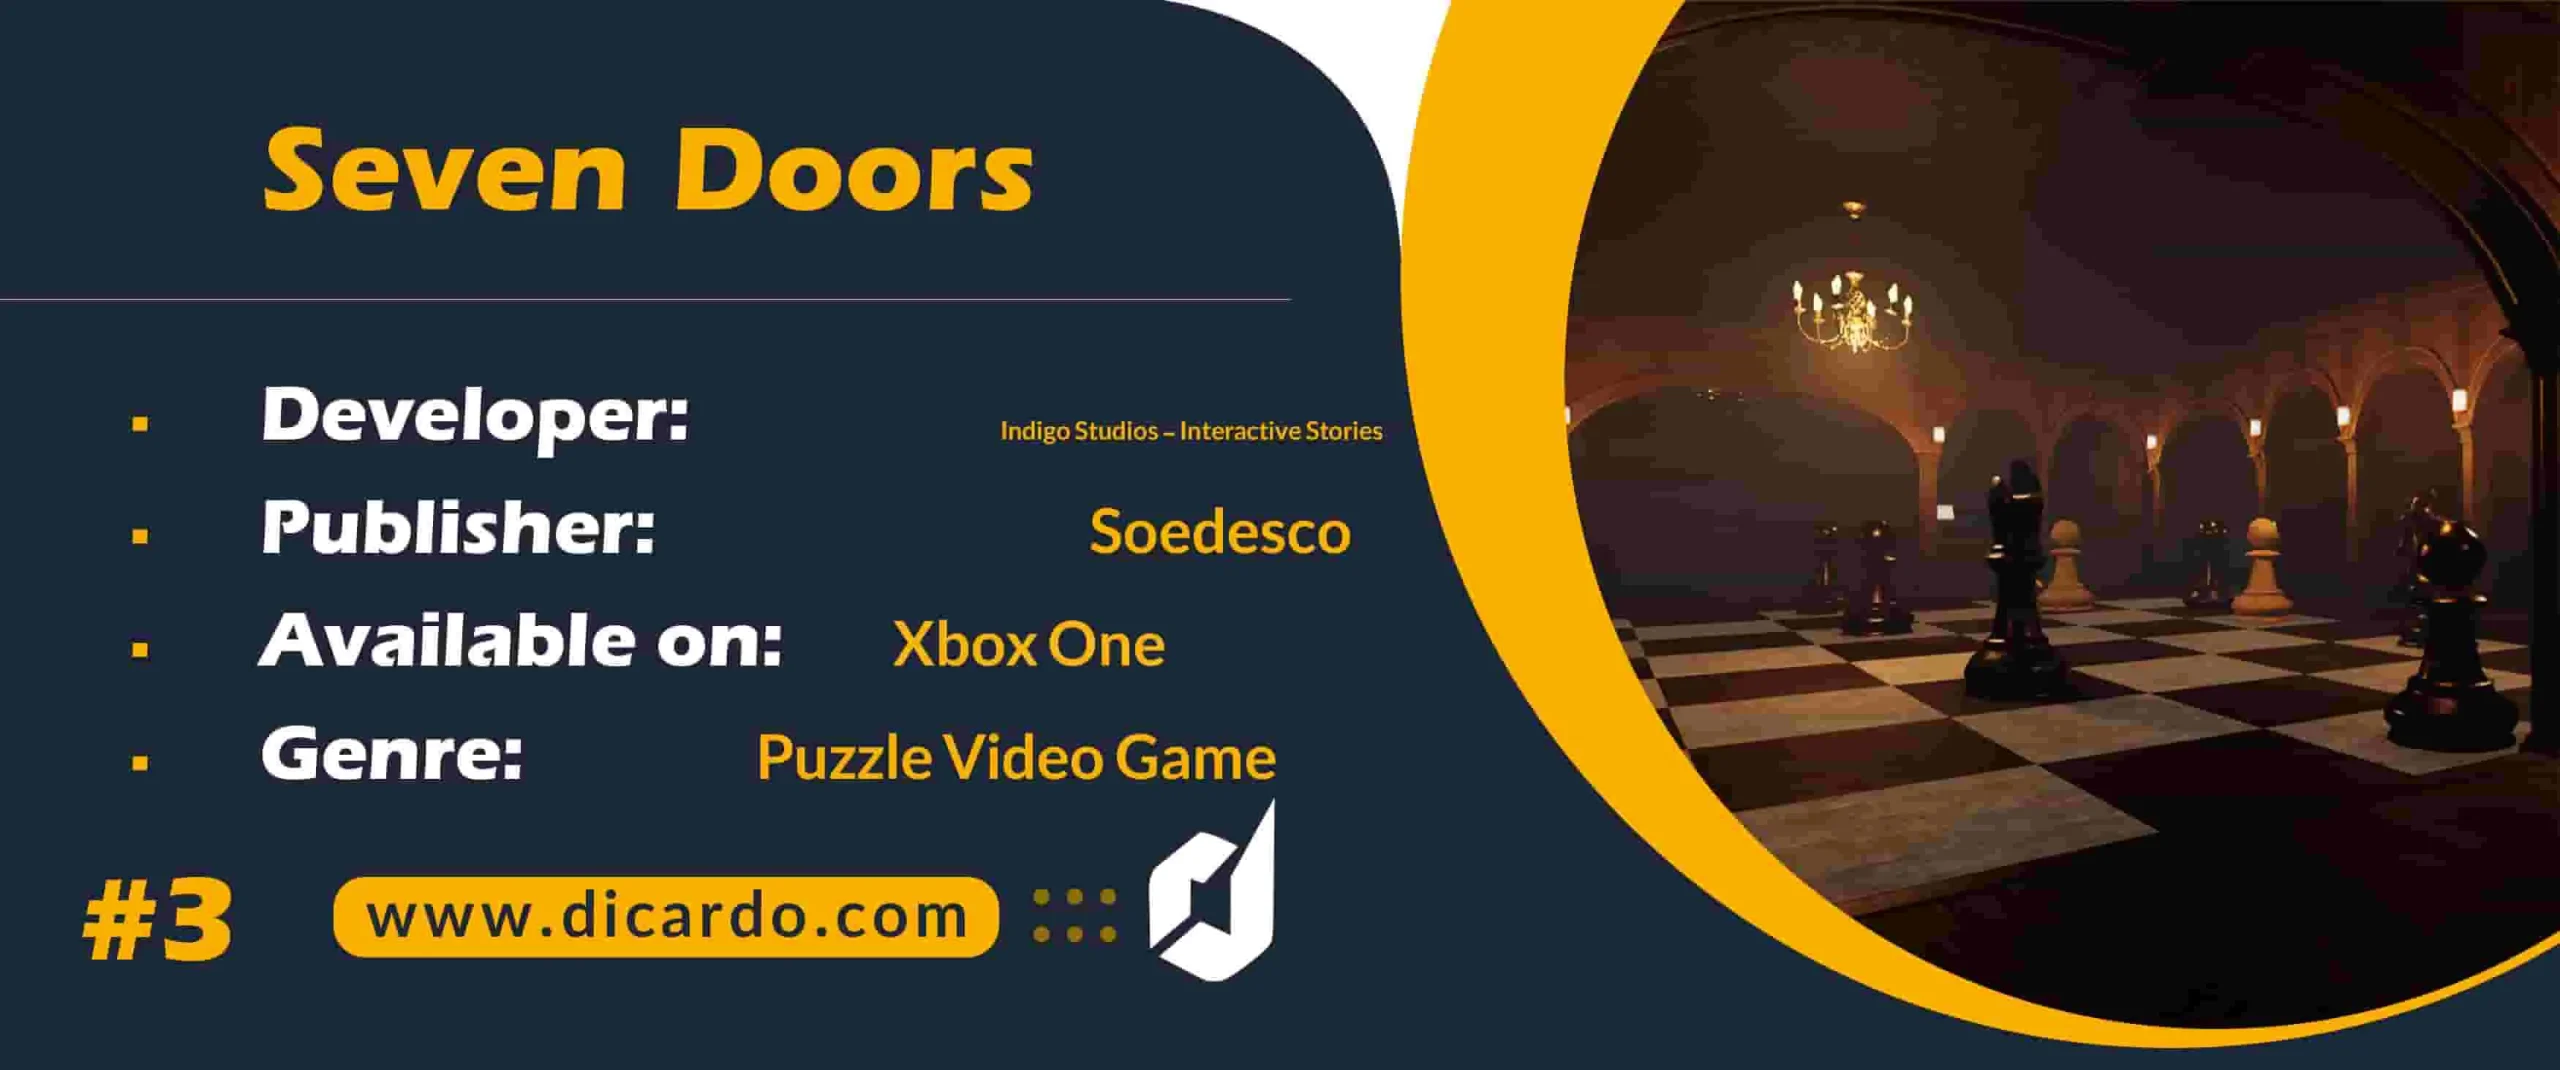 #3 سون دورز Seven Doors از دیگر بازیهای ایکس باکس وان با هفت در شگفت انگیز